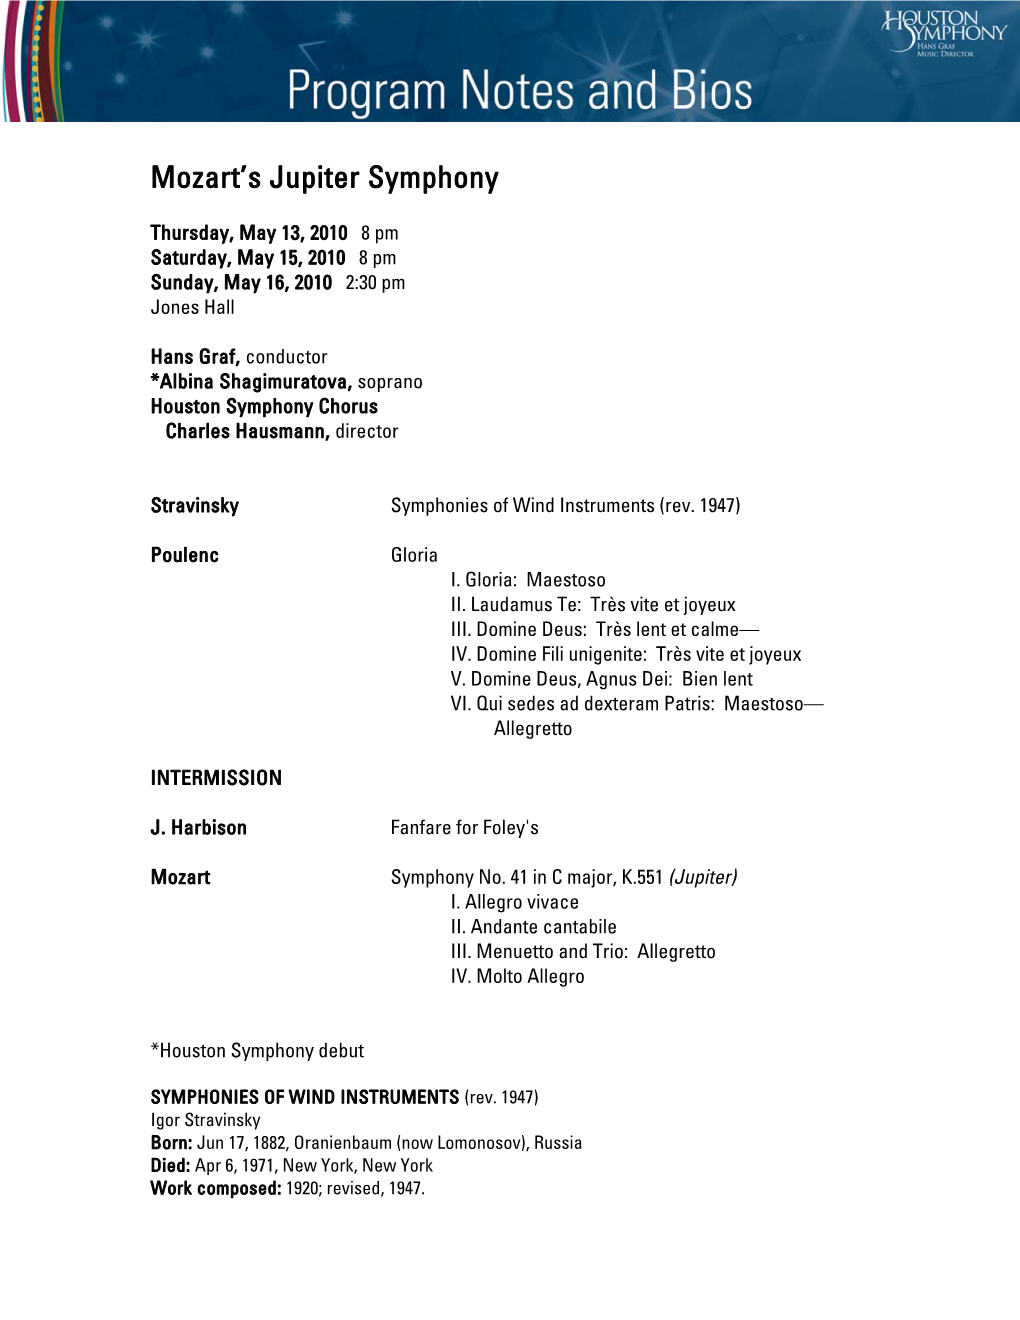 Mozart's Jupiter Symphony